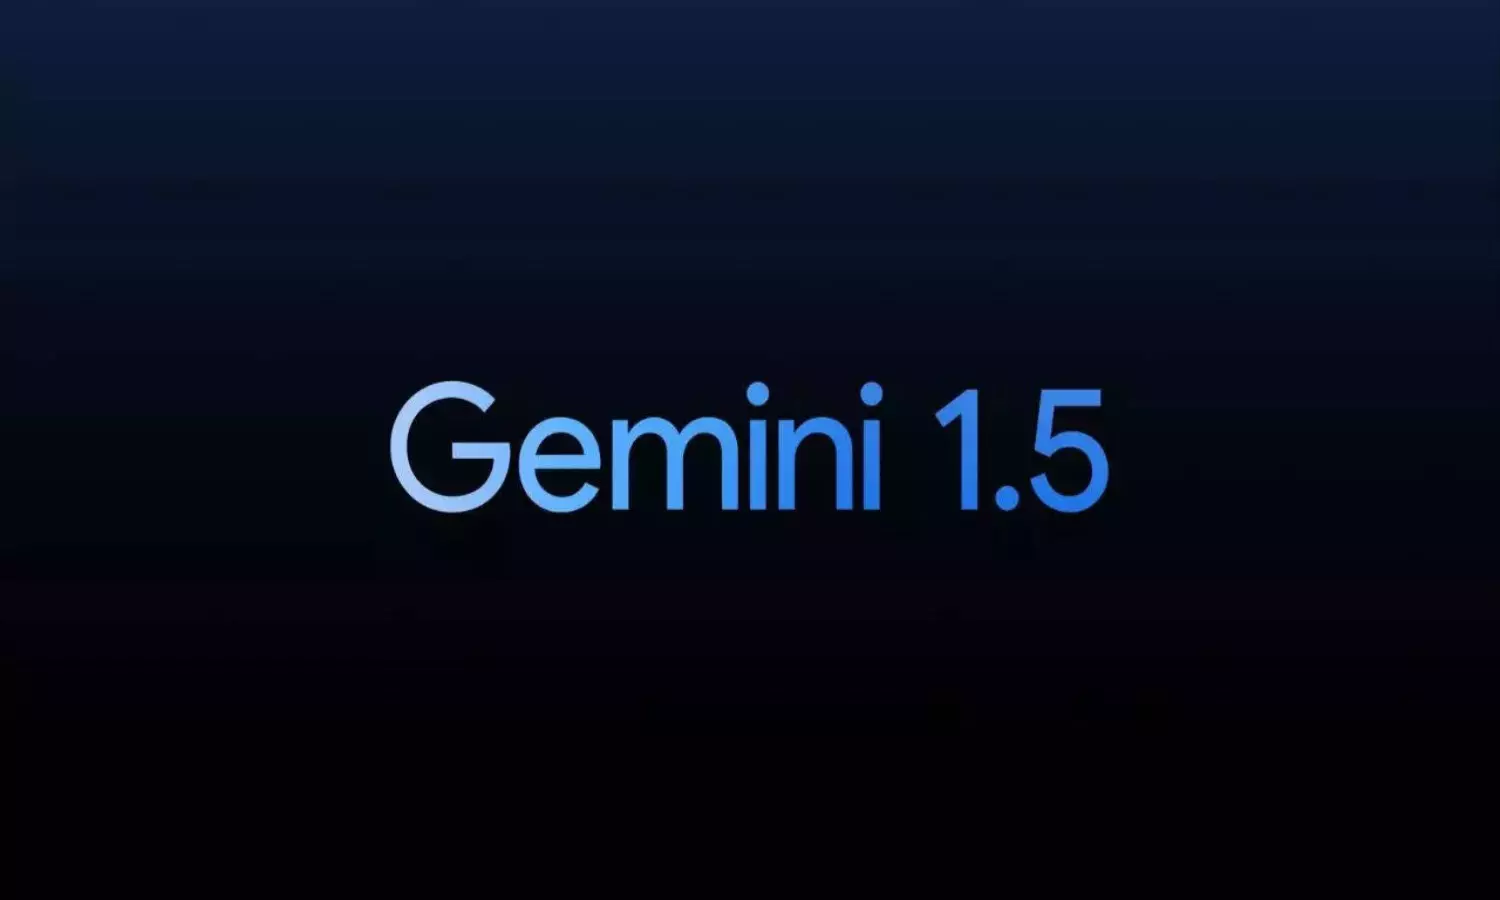 Google ने लॉन्च किया Gemini 1.5, जानें कैसे इससे आसानी से होंगे कई मुश्किल काम